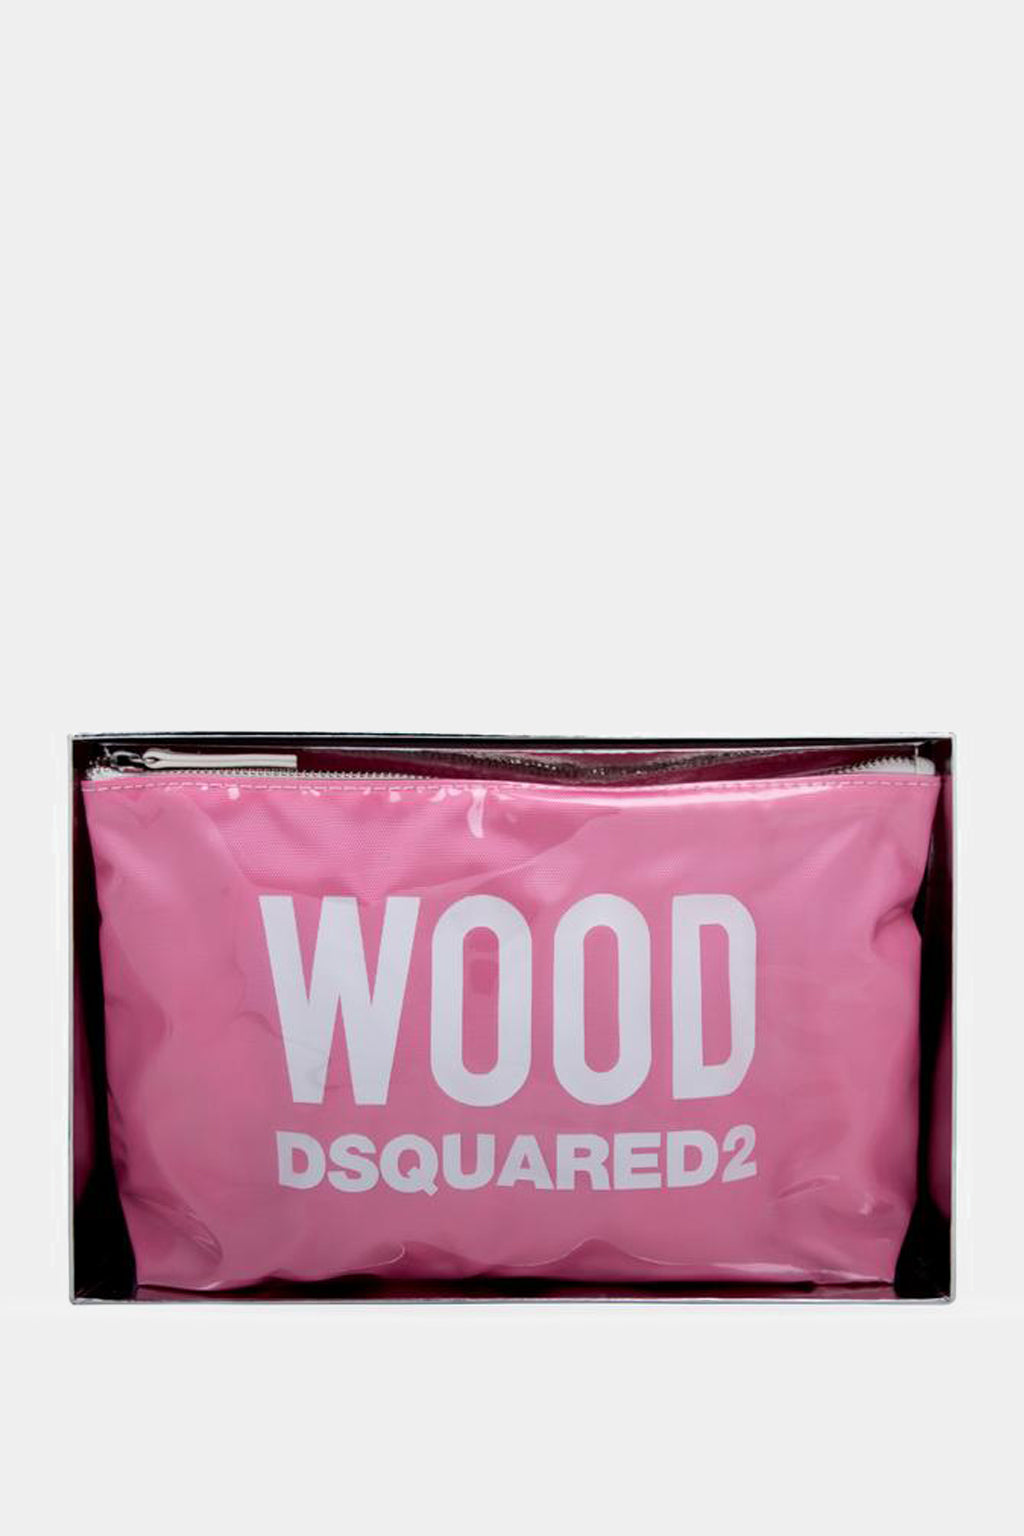 Dsquared2 - Wood L Eau de Toilette Set